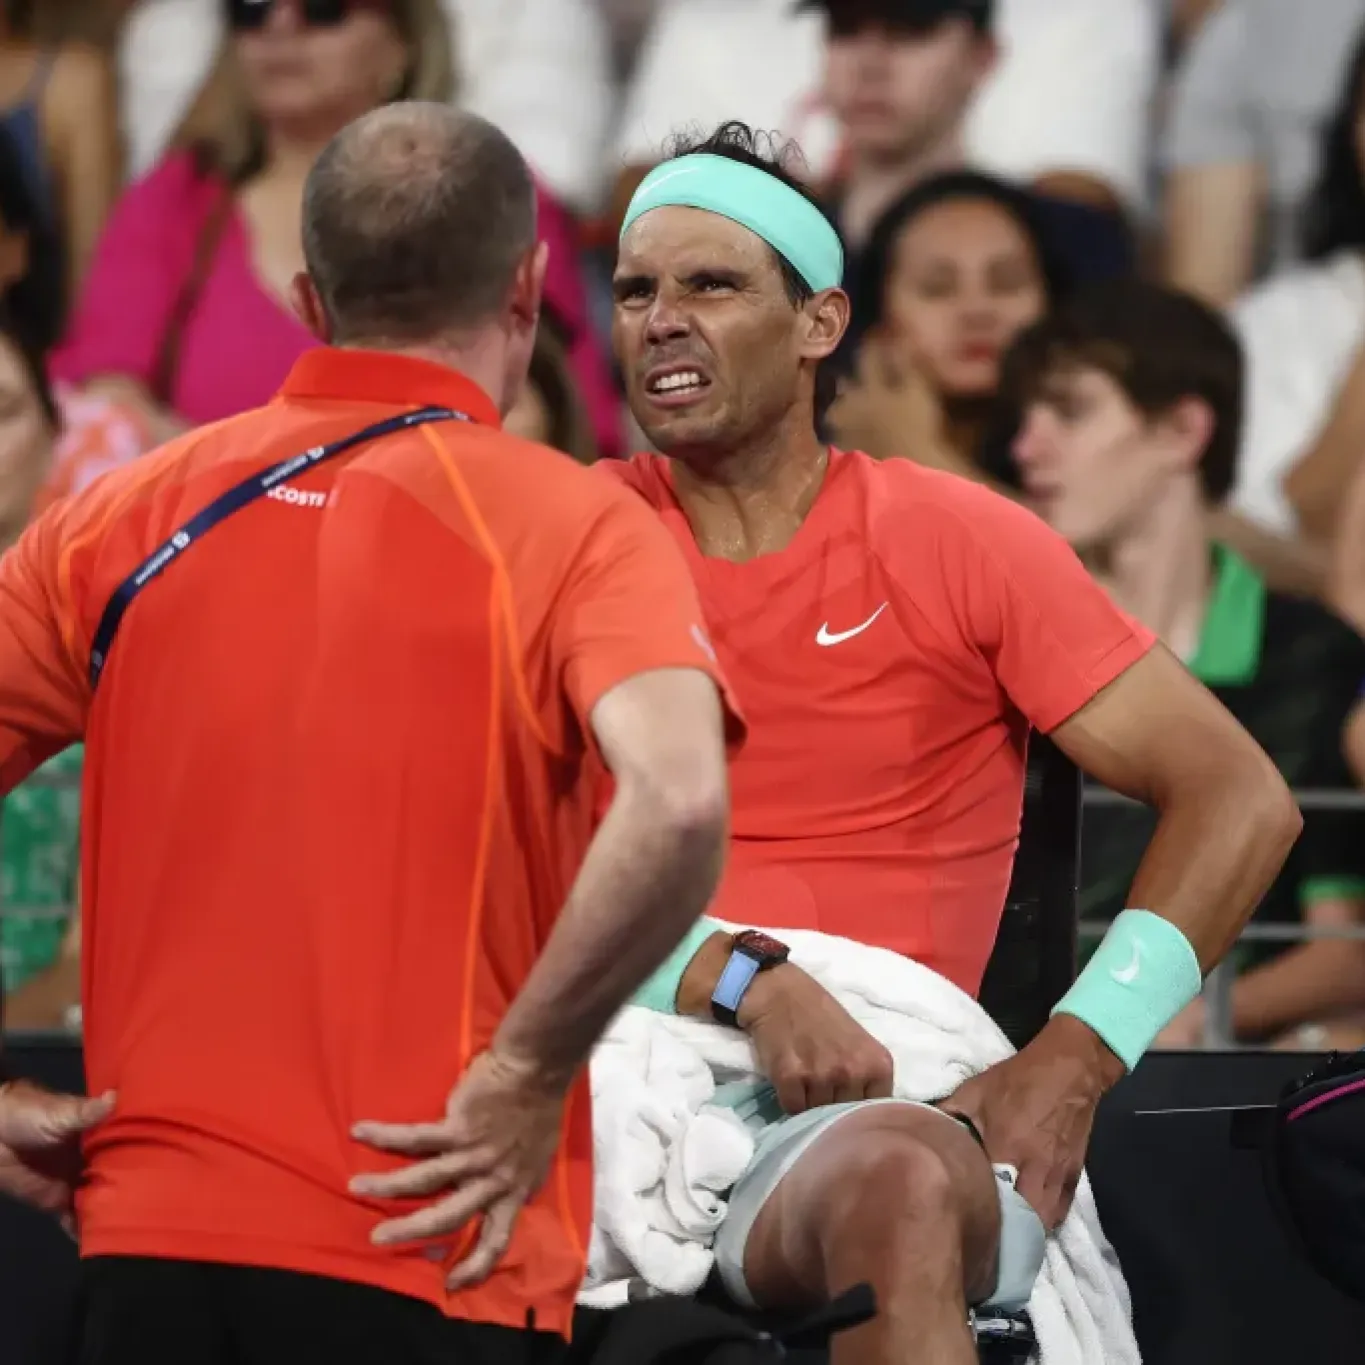 Nadal y su posible regreso al circuito: "No puedo asegurar nada" | Canal Showsport